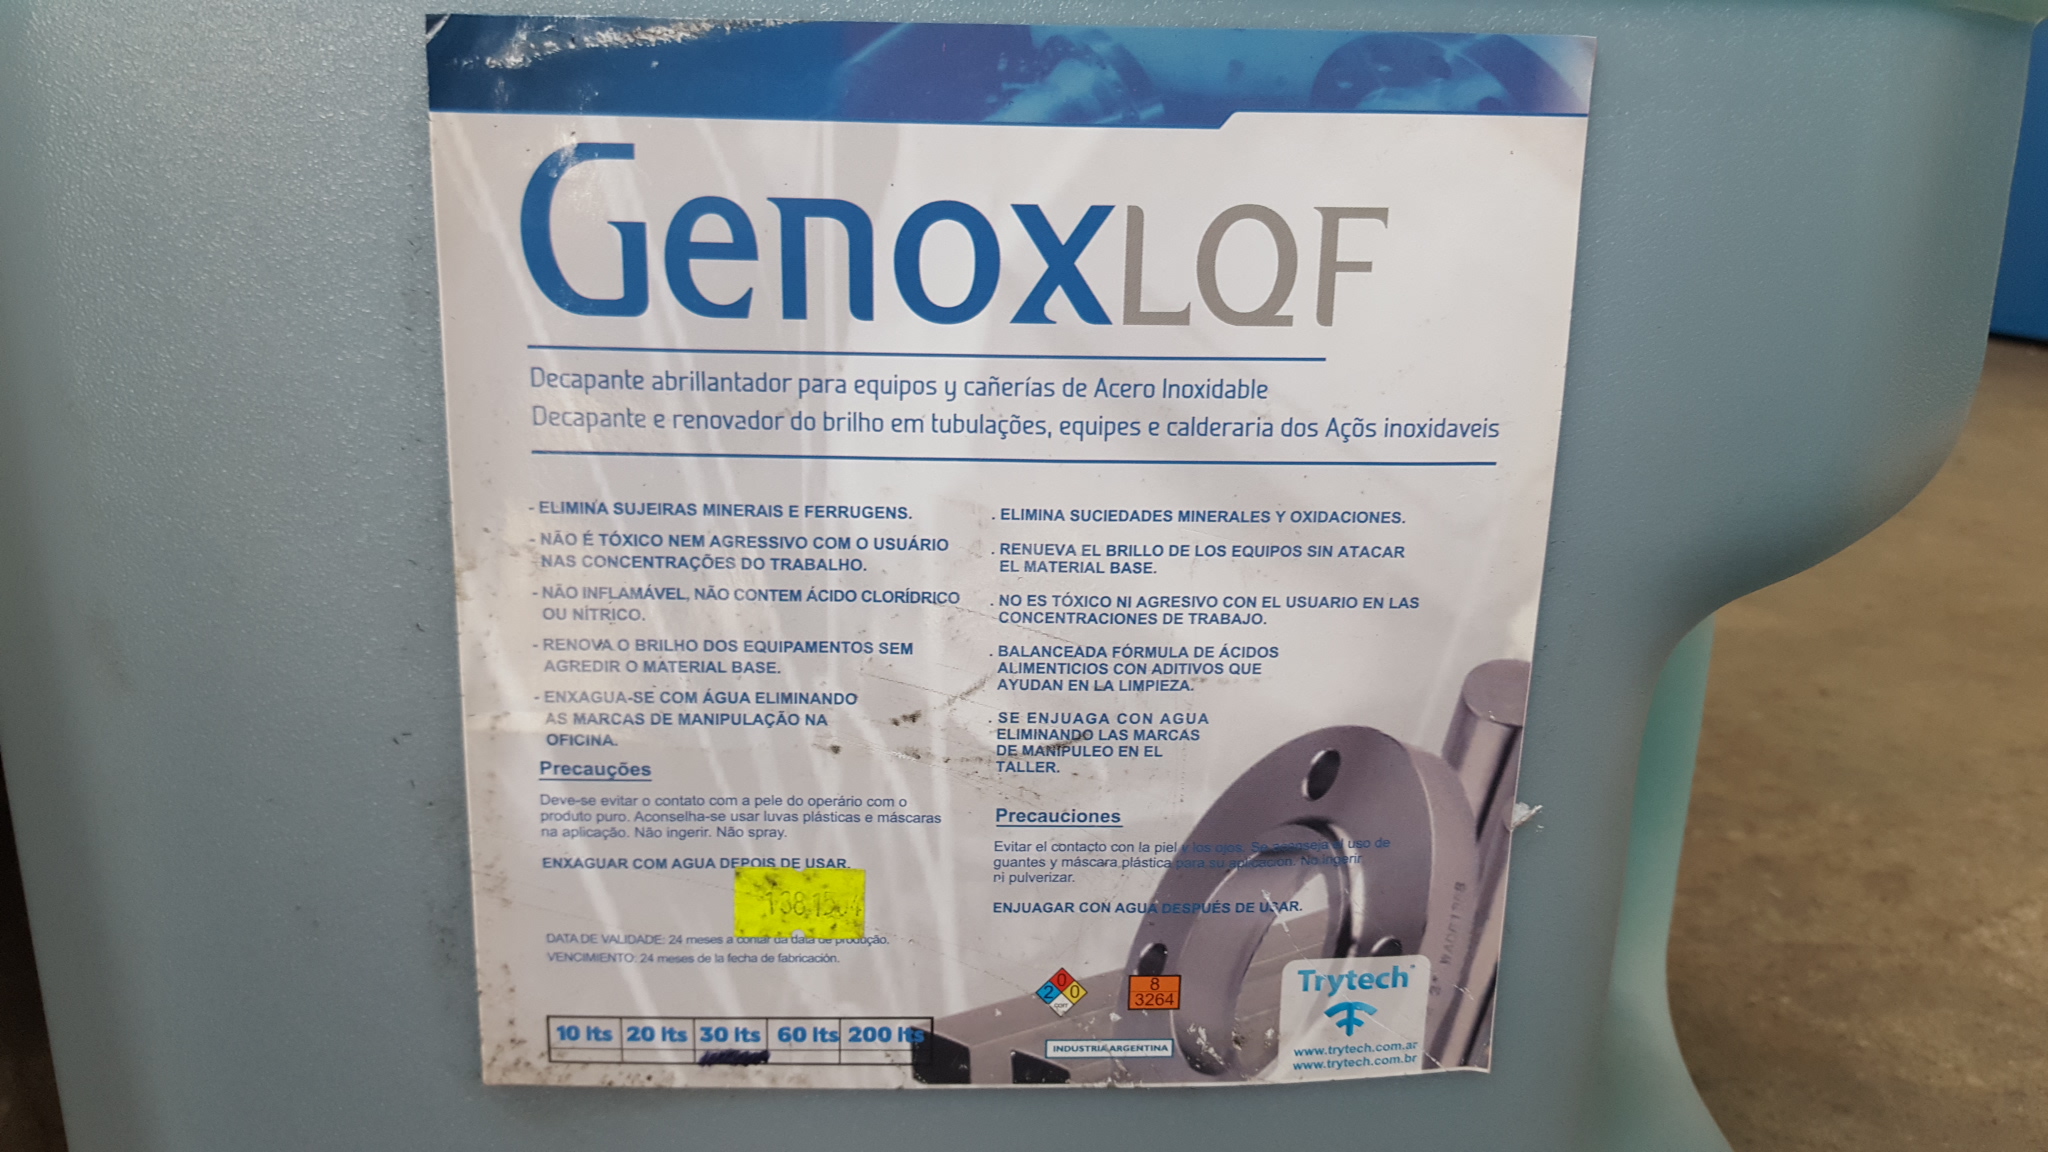    GENOX L Q F            (DECAPANTE)